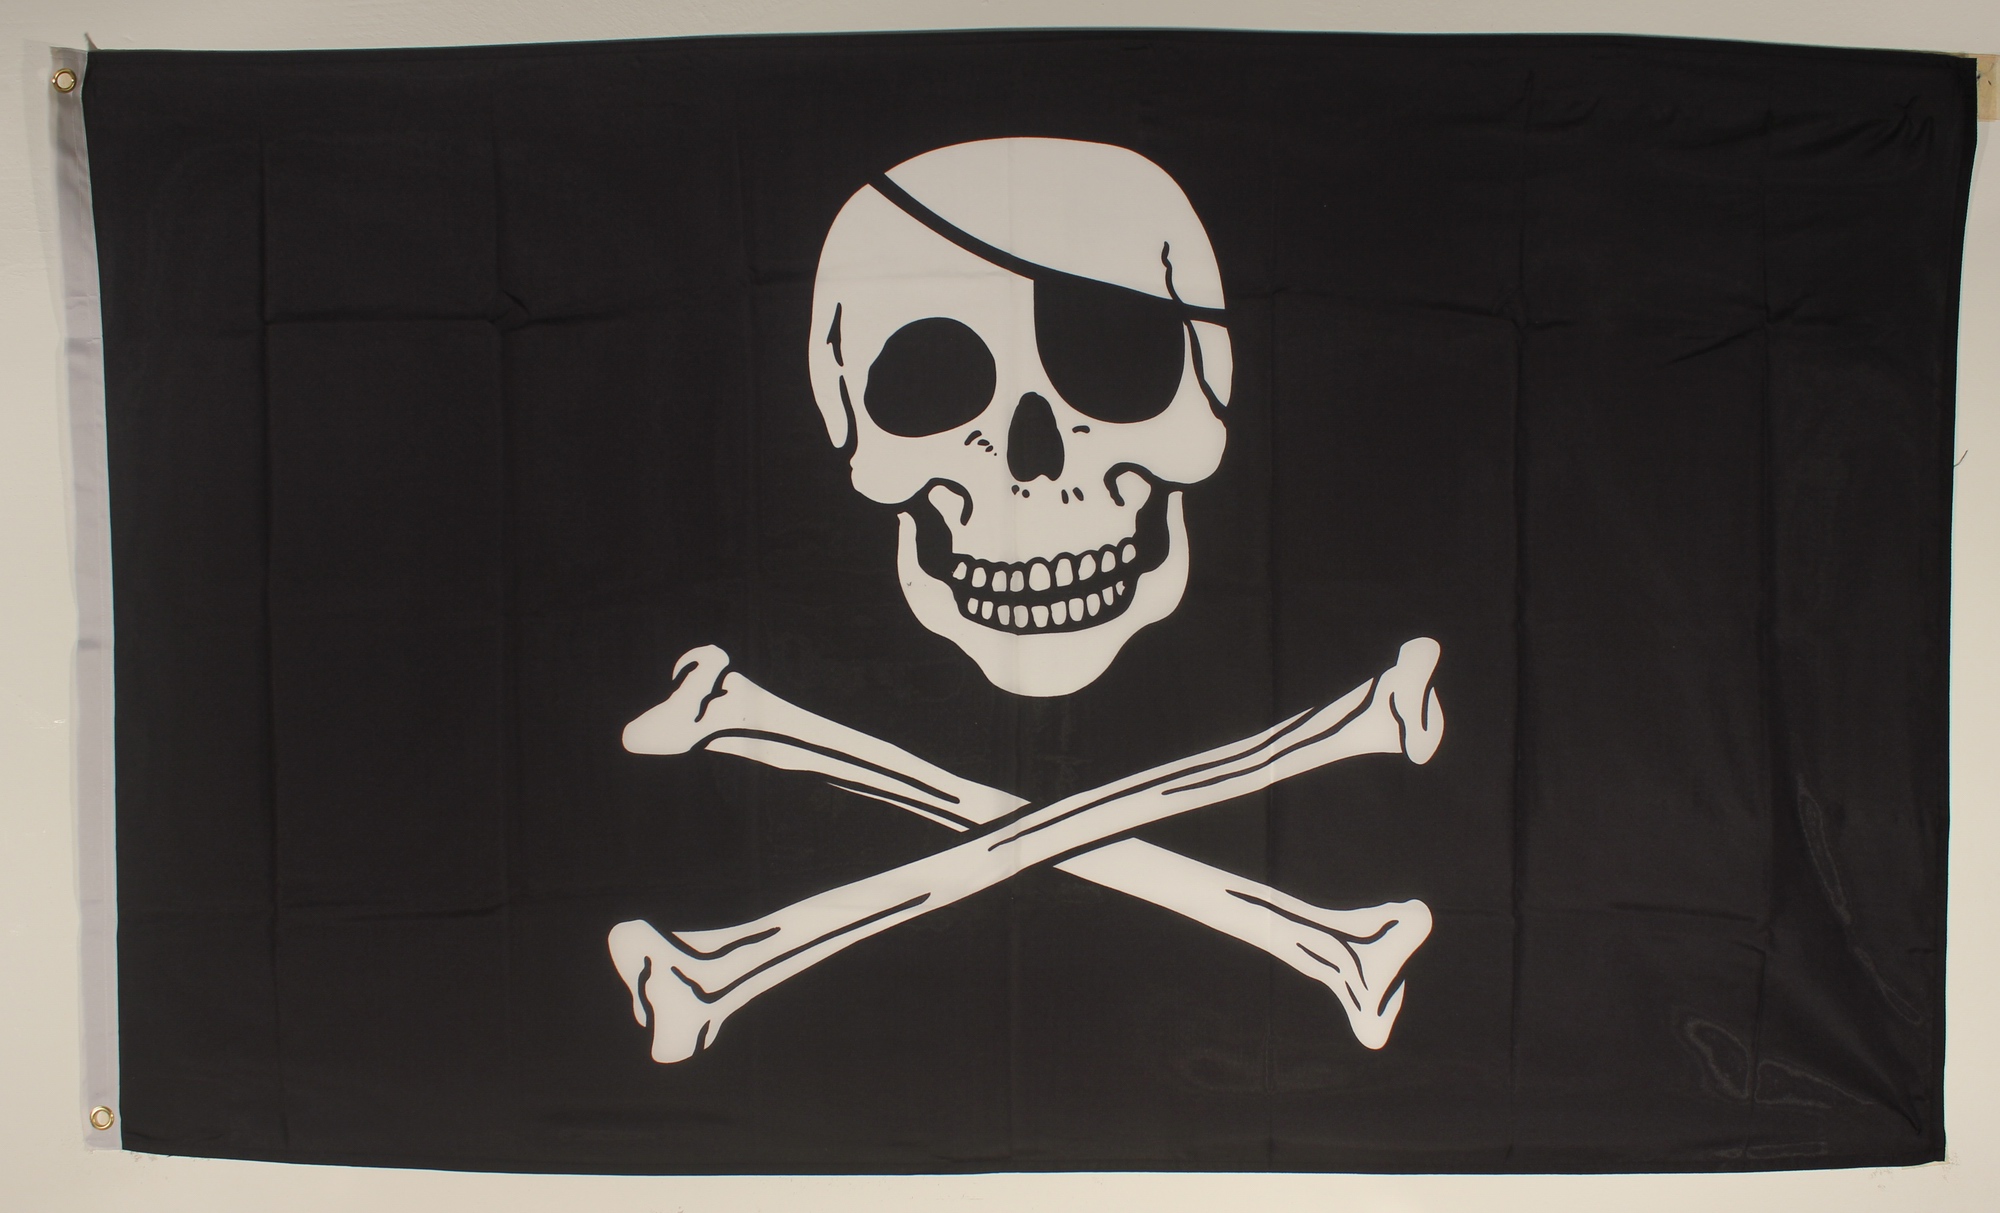 piratenflagge mit sicherem Mast von 60 cm Länge 